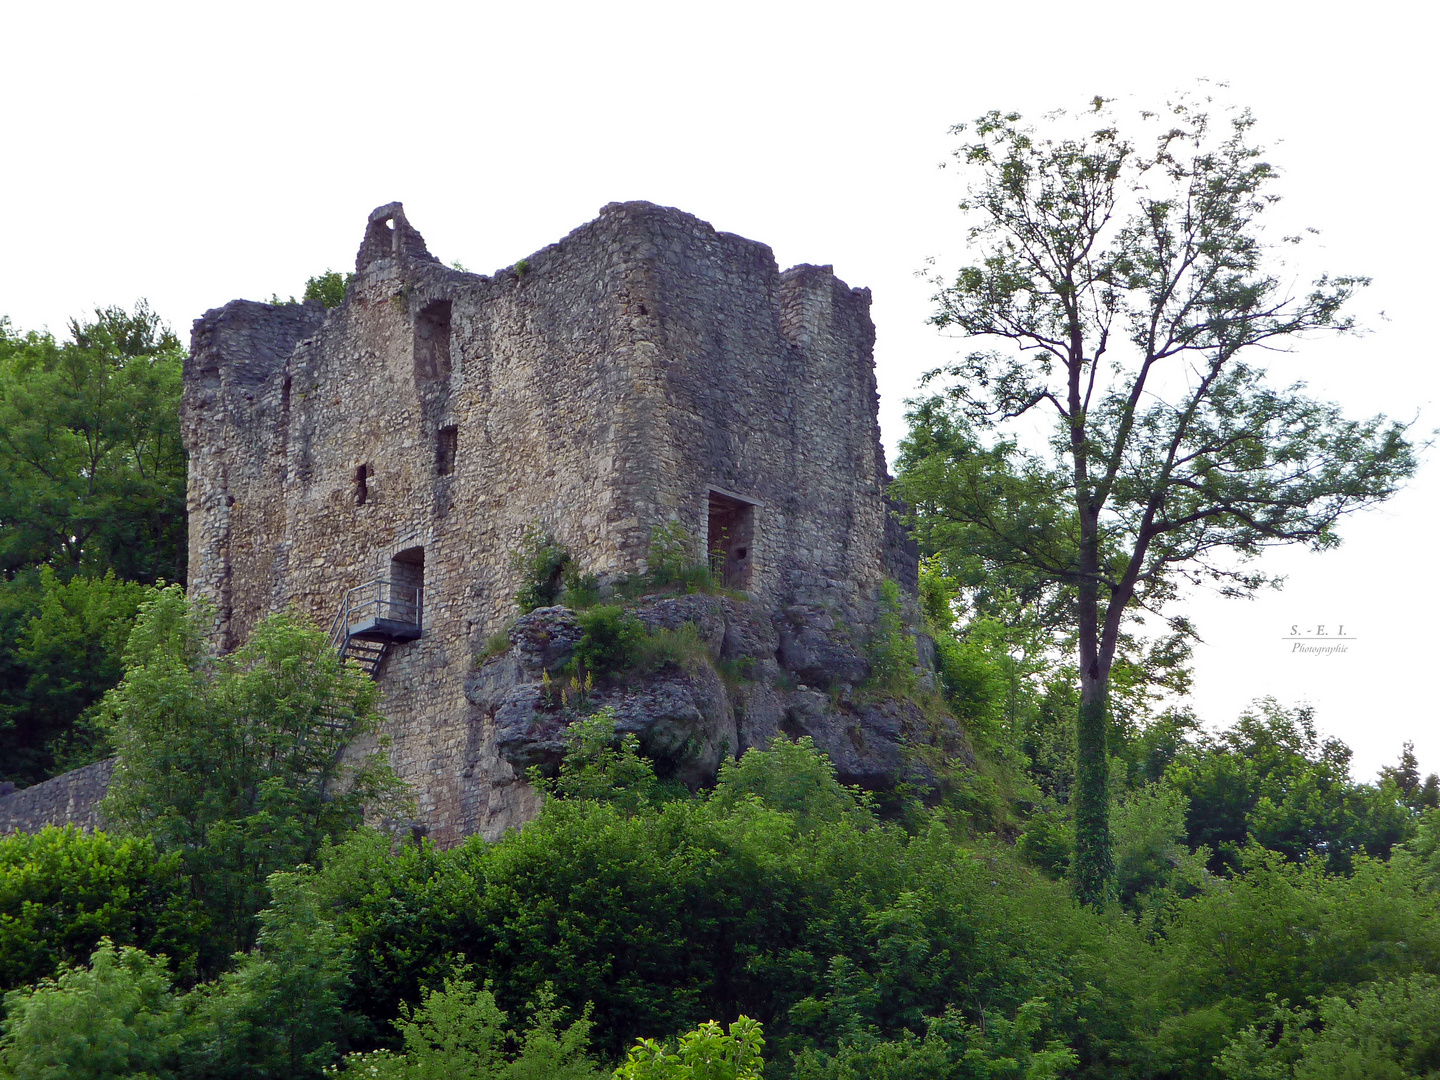 "Im Lautertal - Blick auf die Burg Bichishausen 2"